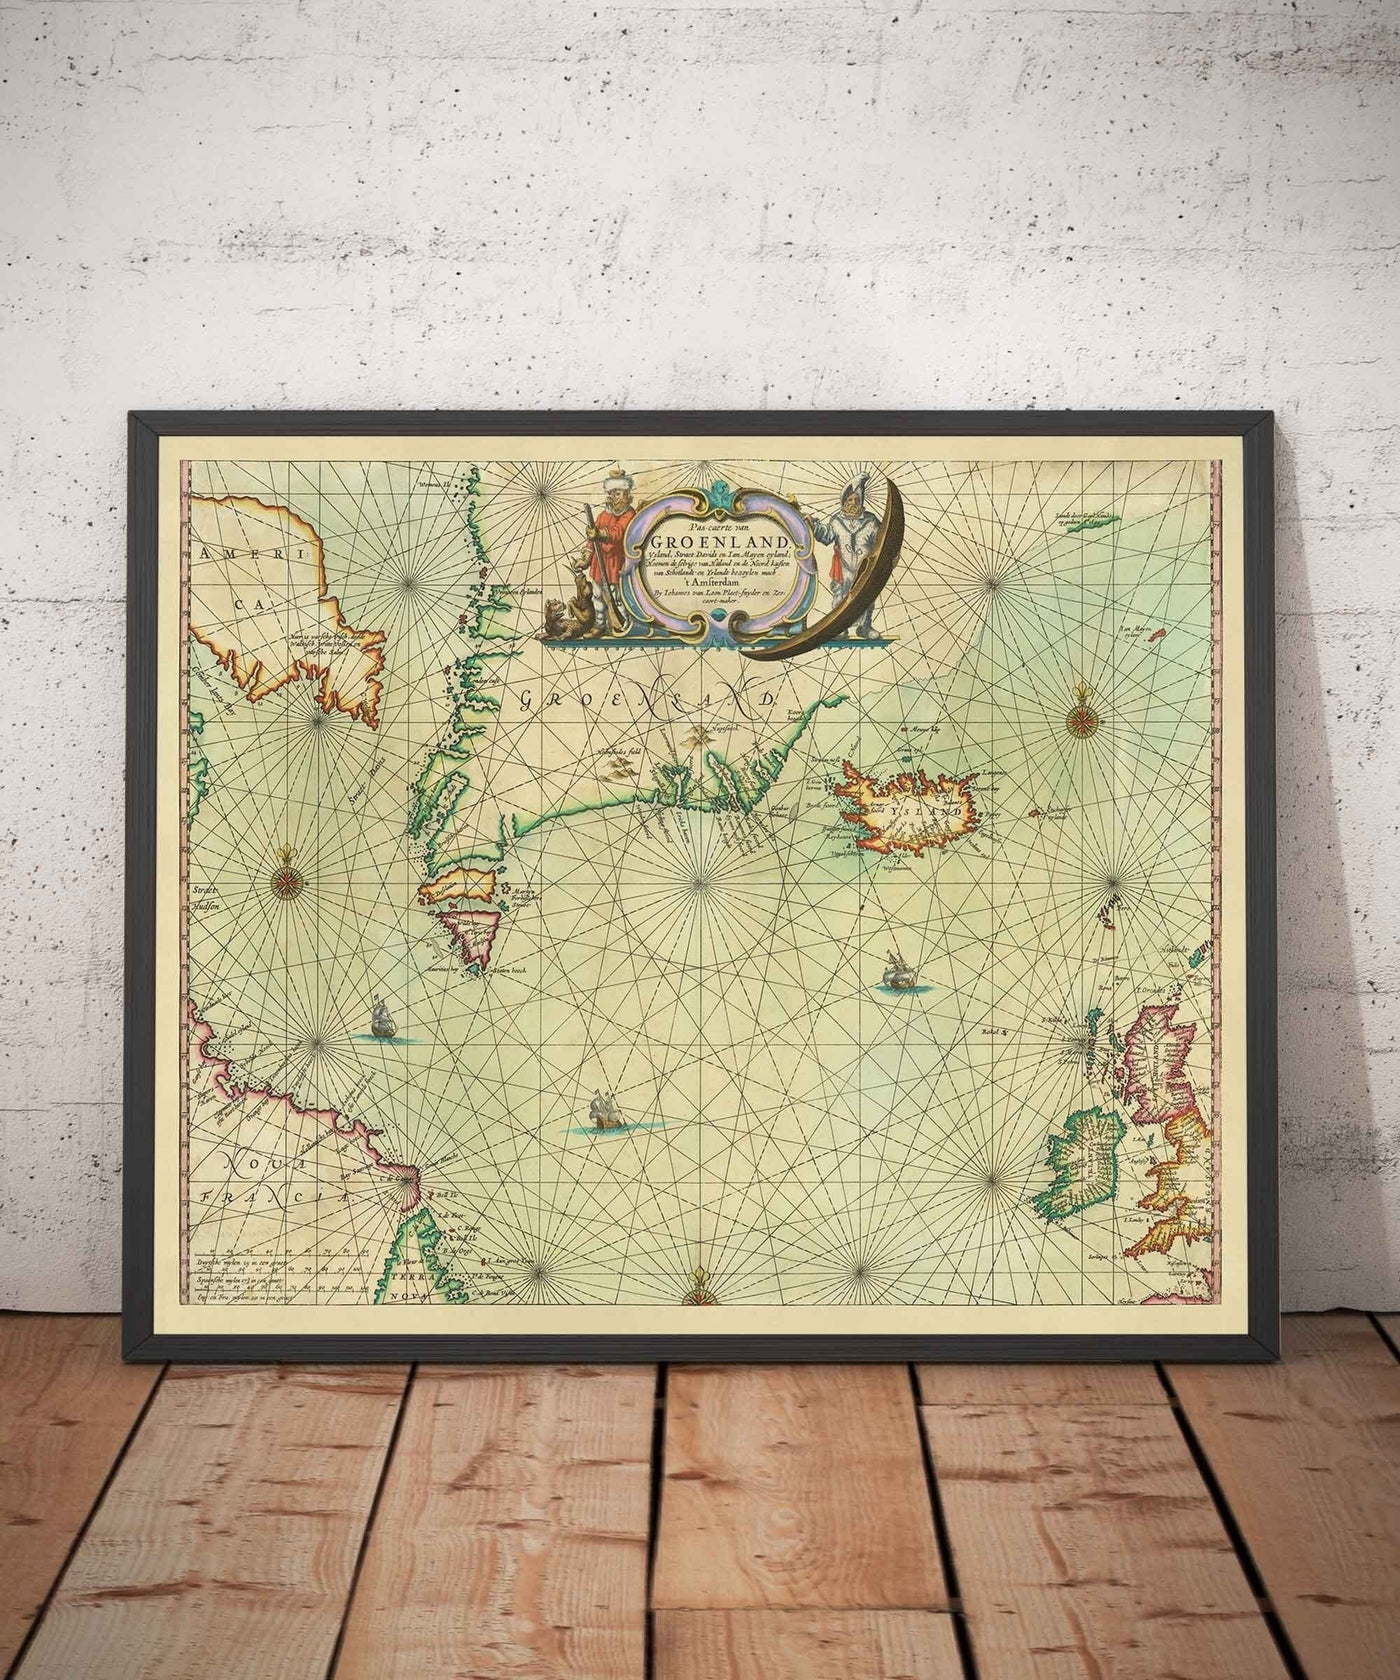 Mapa antiguo de Groenlandia, Islandia y el Mar del Norte, 1661 por van Loon - Carta de exploración vikinga